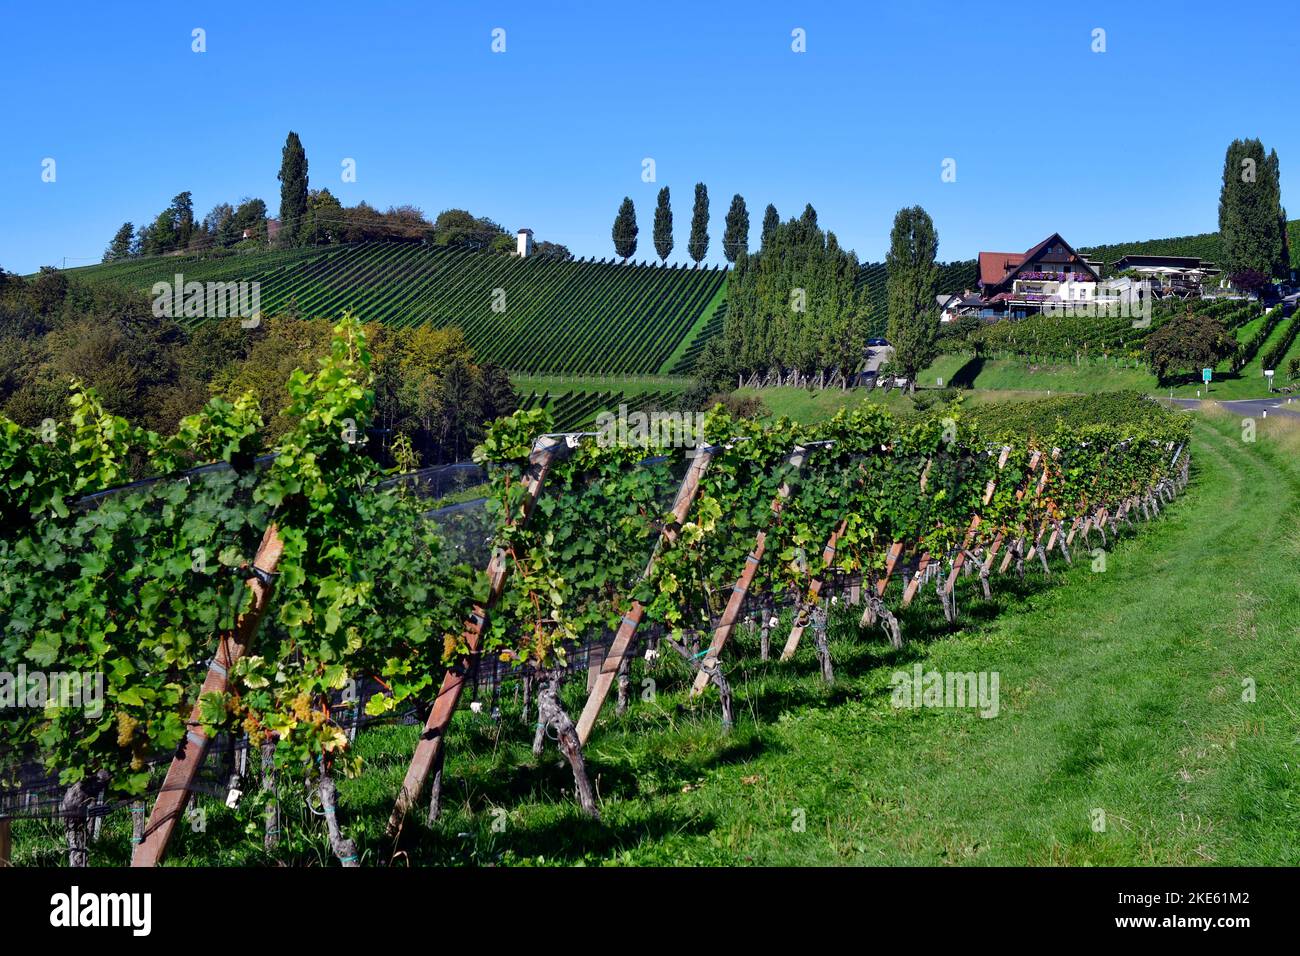 Austria, viñedos en las laderas escarpadas del valle de Sulm situado en la ruta del vino de Estiria, el paisaje montañoso también se conoce como la Toscana de Austr Foto de stock